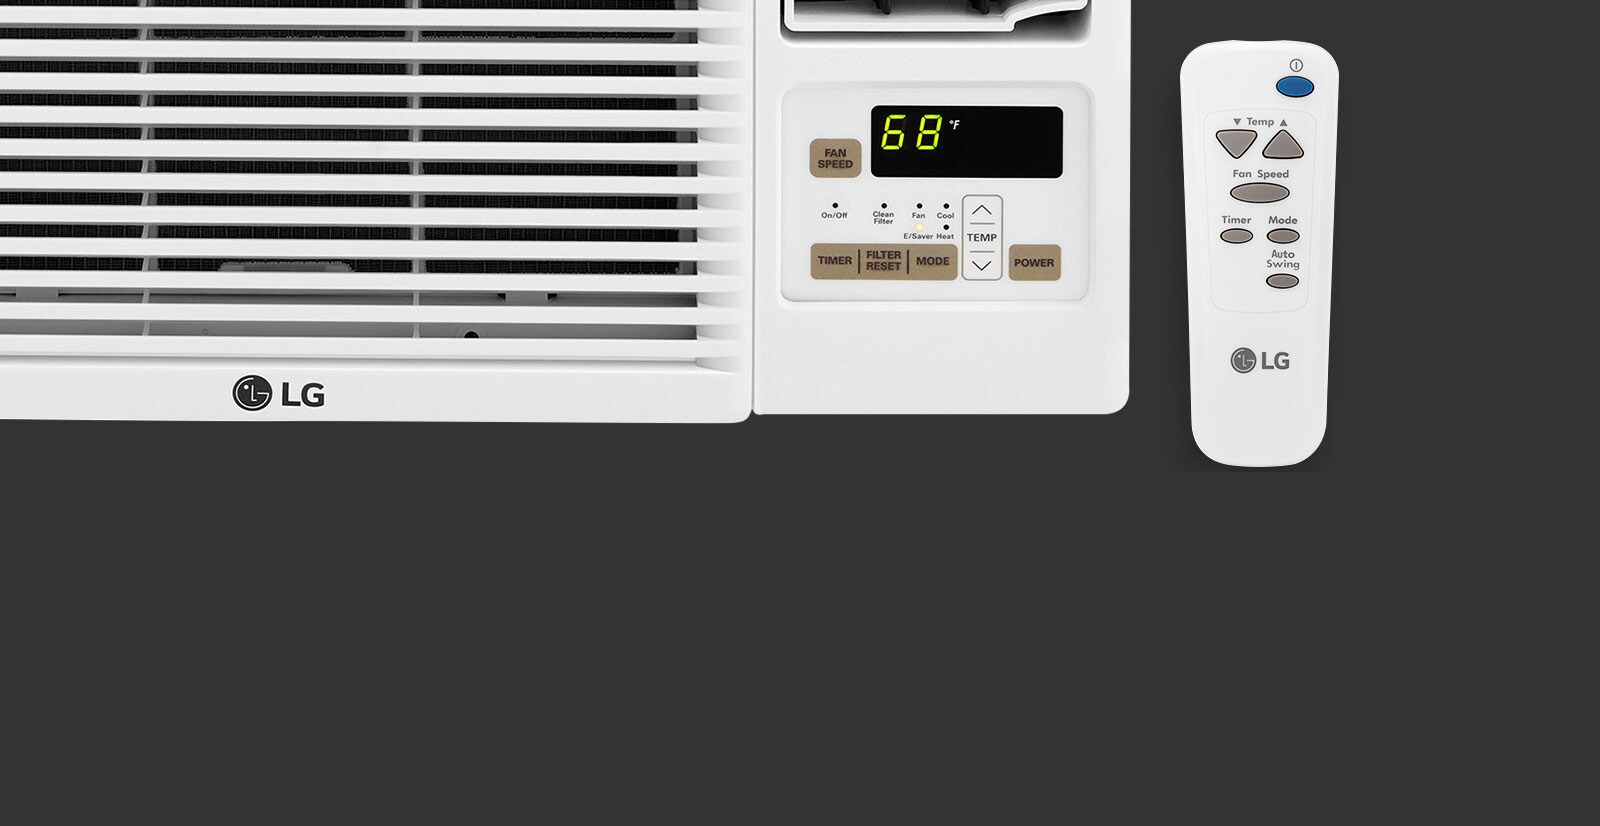 Lg Lw8016hr 7 500 Btu Window Air Conditioner Lg Usa